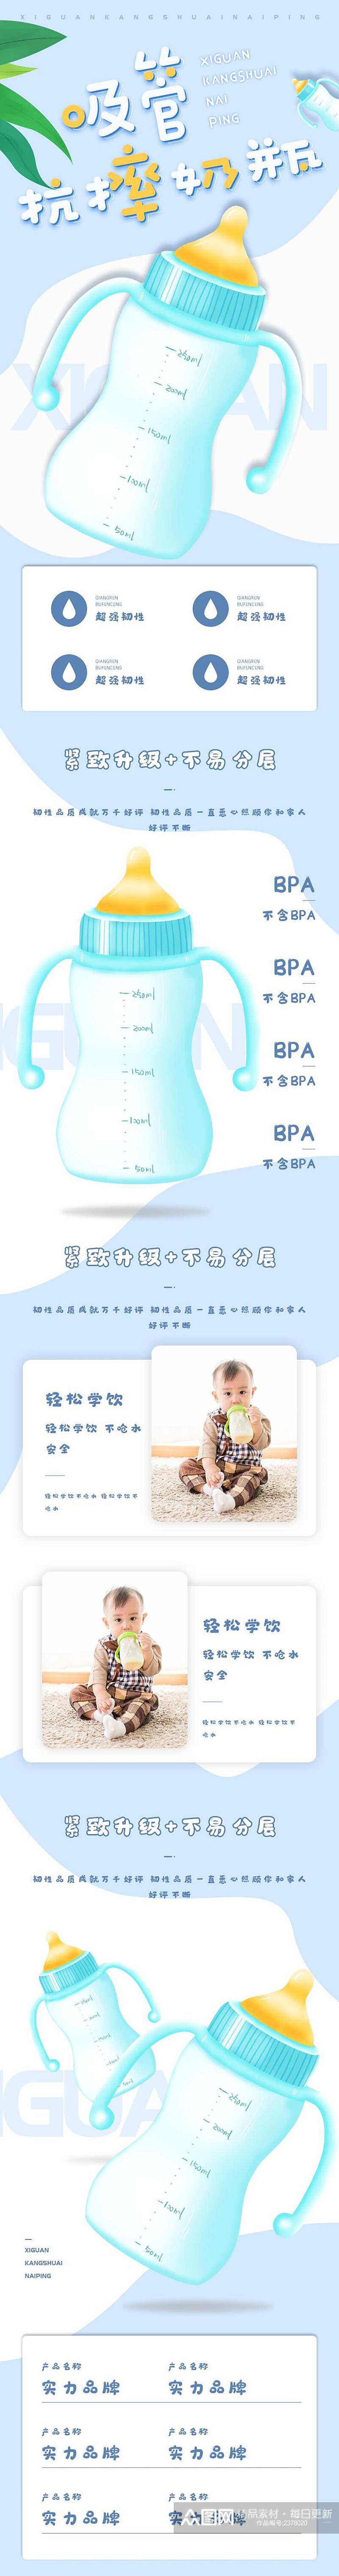 吸管抗摔奶瓶母婴用品电商详情页素材